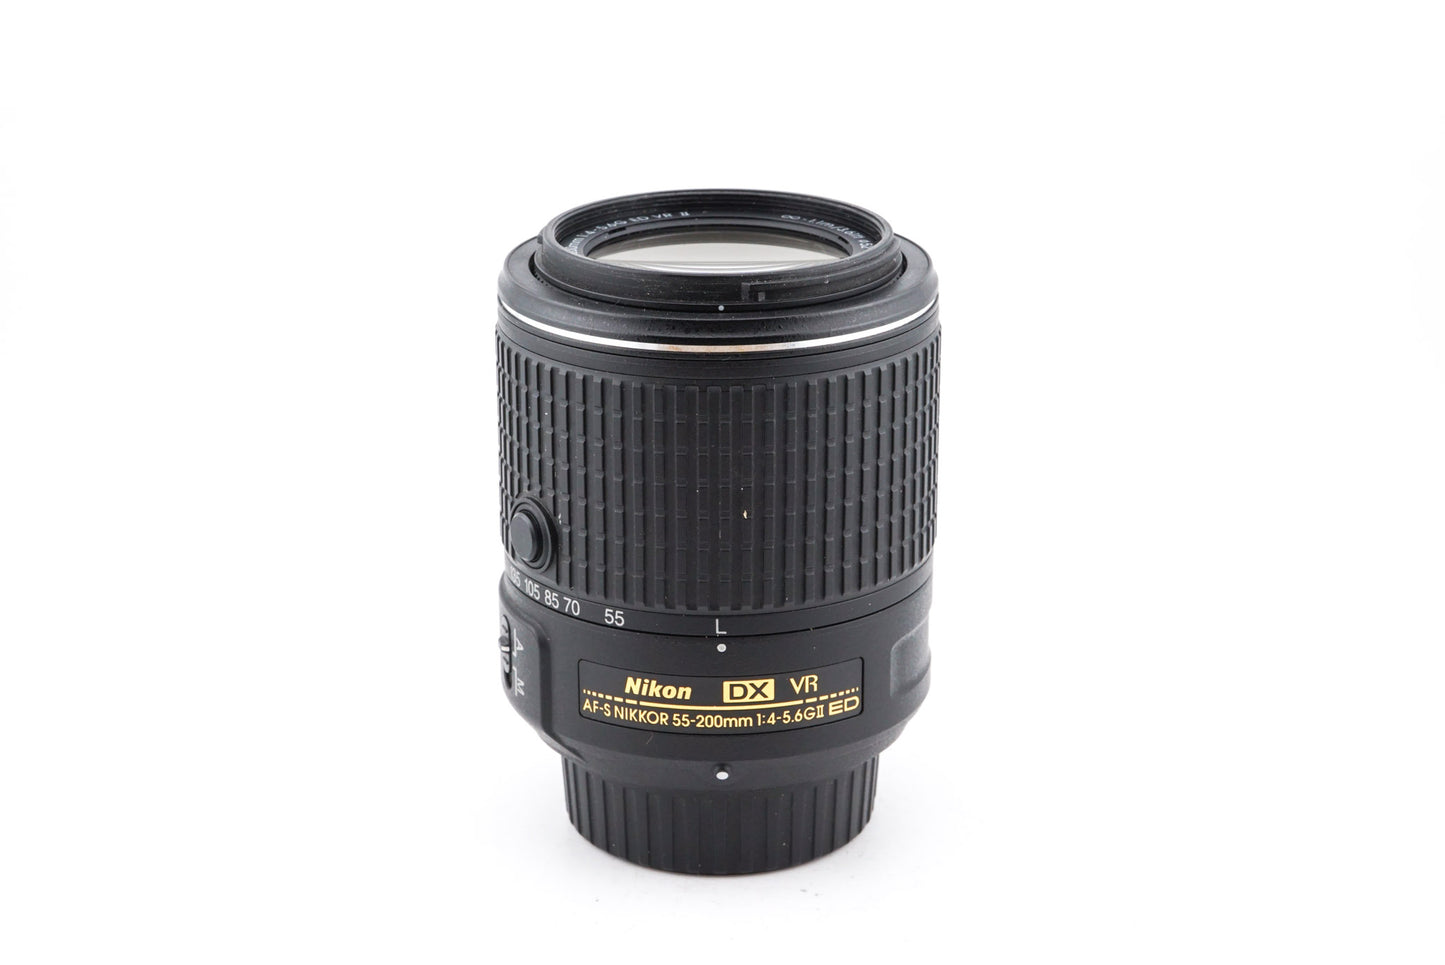 Nikon 55-200mm f4-5.6 G ED DX AF-S VR II